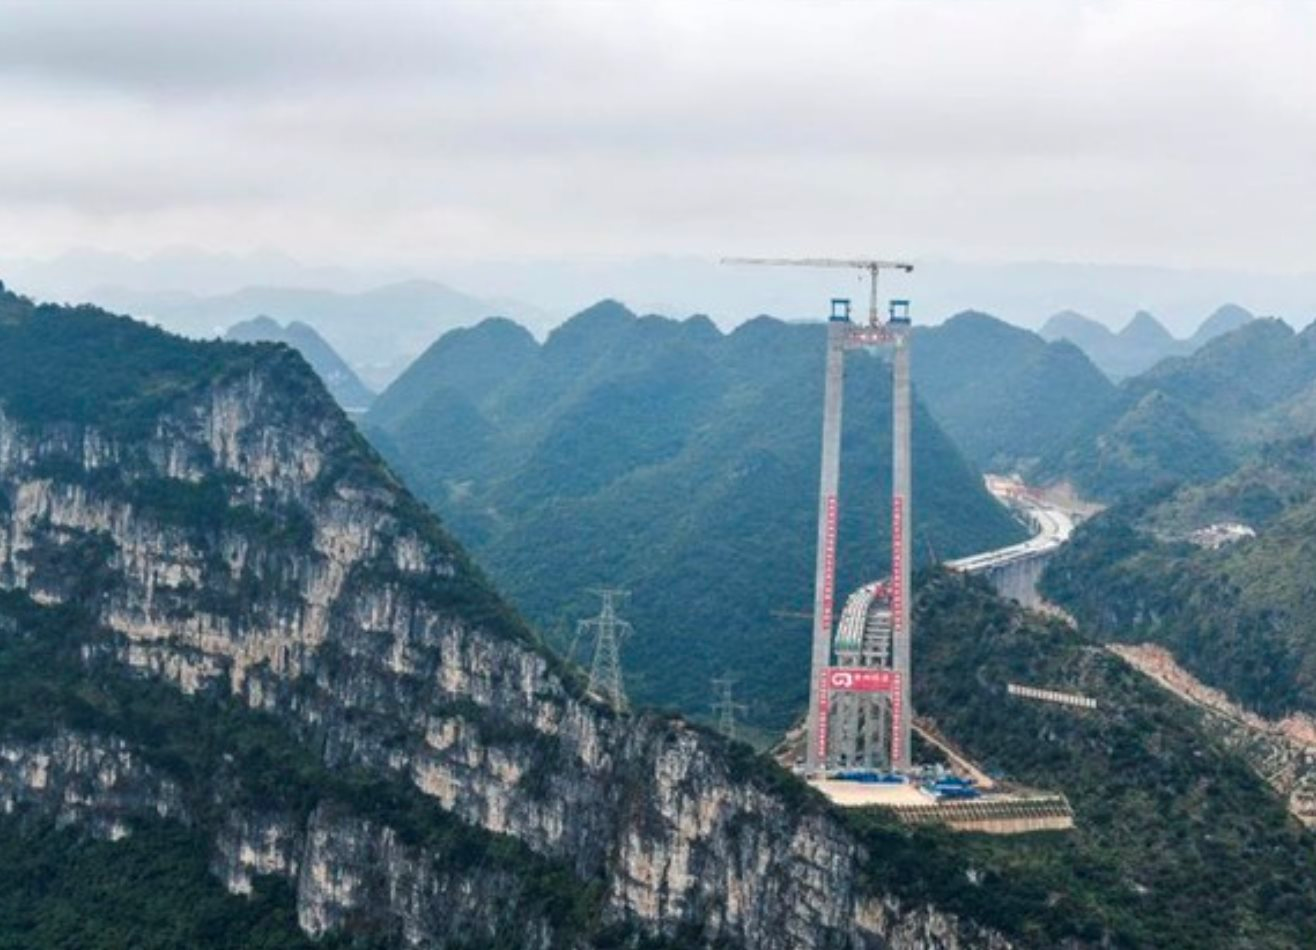 Tỉnh thuộc top nghèo nhất Trung Quốc: Sở hữu 30.000 cây cầu băng qua núi cao vài trăm mét, chi phí xây dựng ‘sương sương’ 3-5 nghìn tỷ đồng, sắp khánh thành cầu cao nhất thế giới- Ảnh 6.